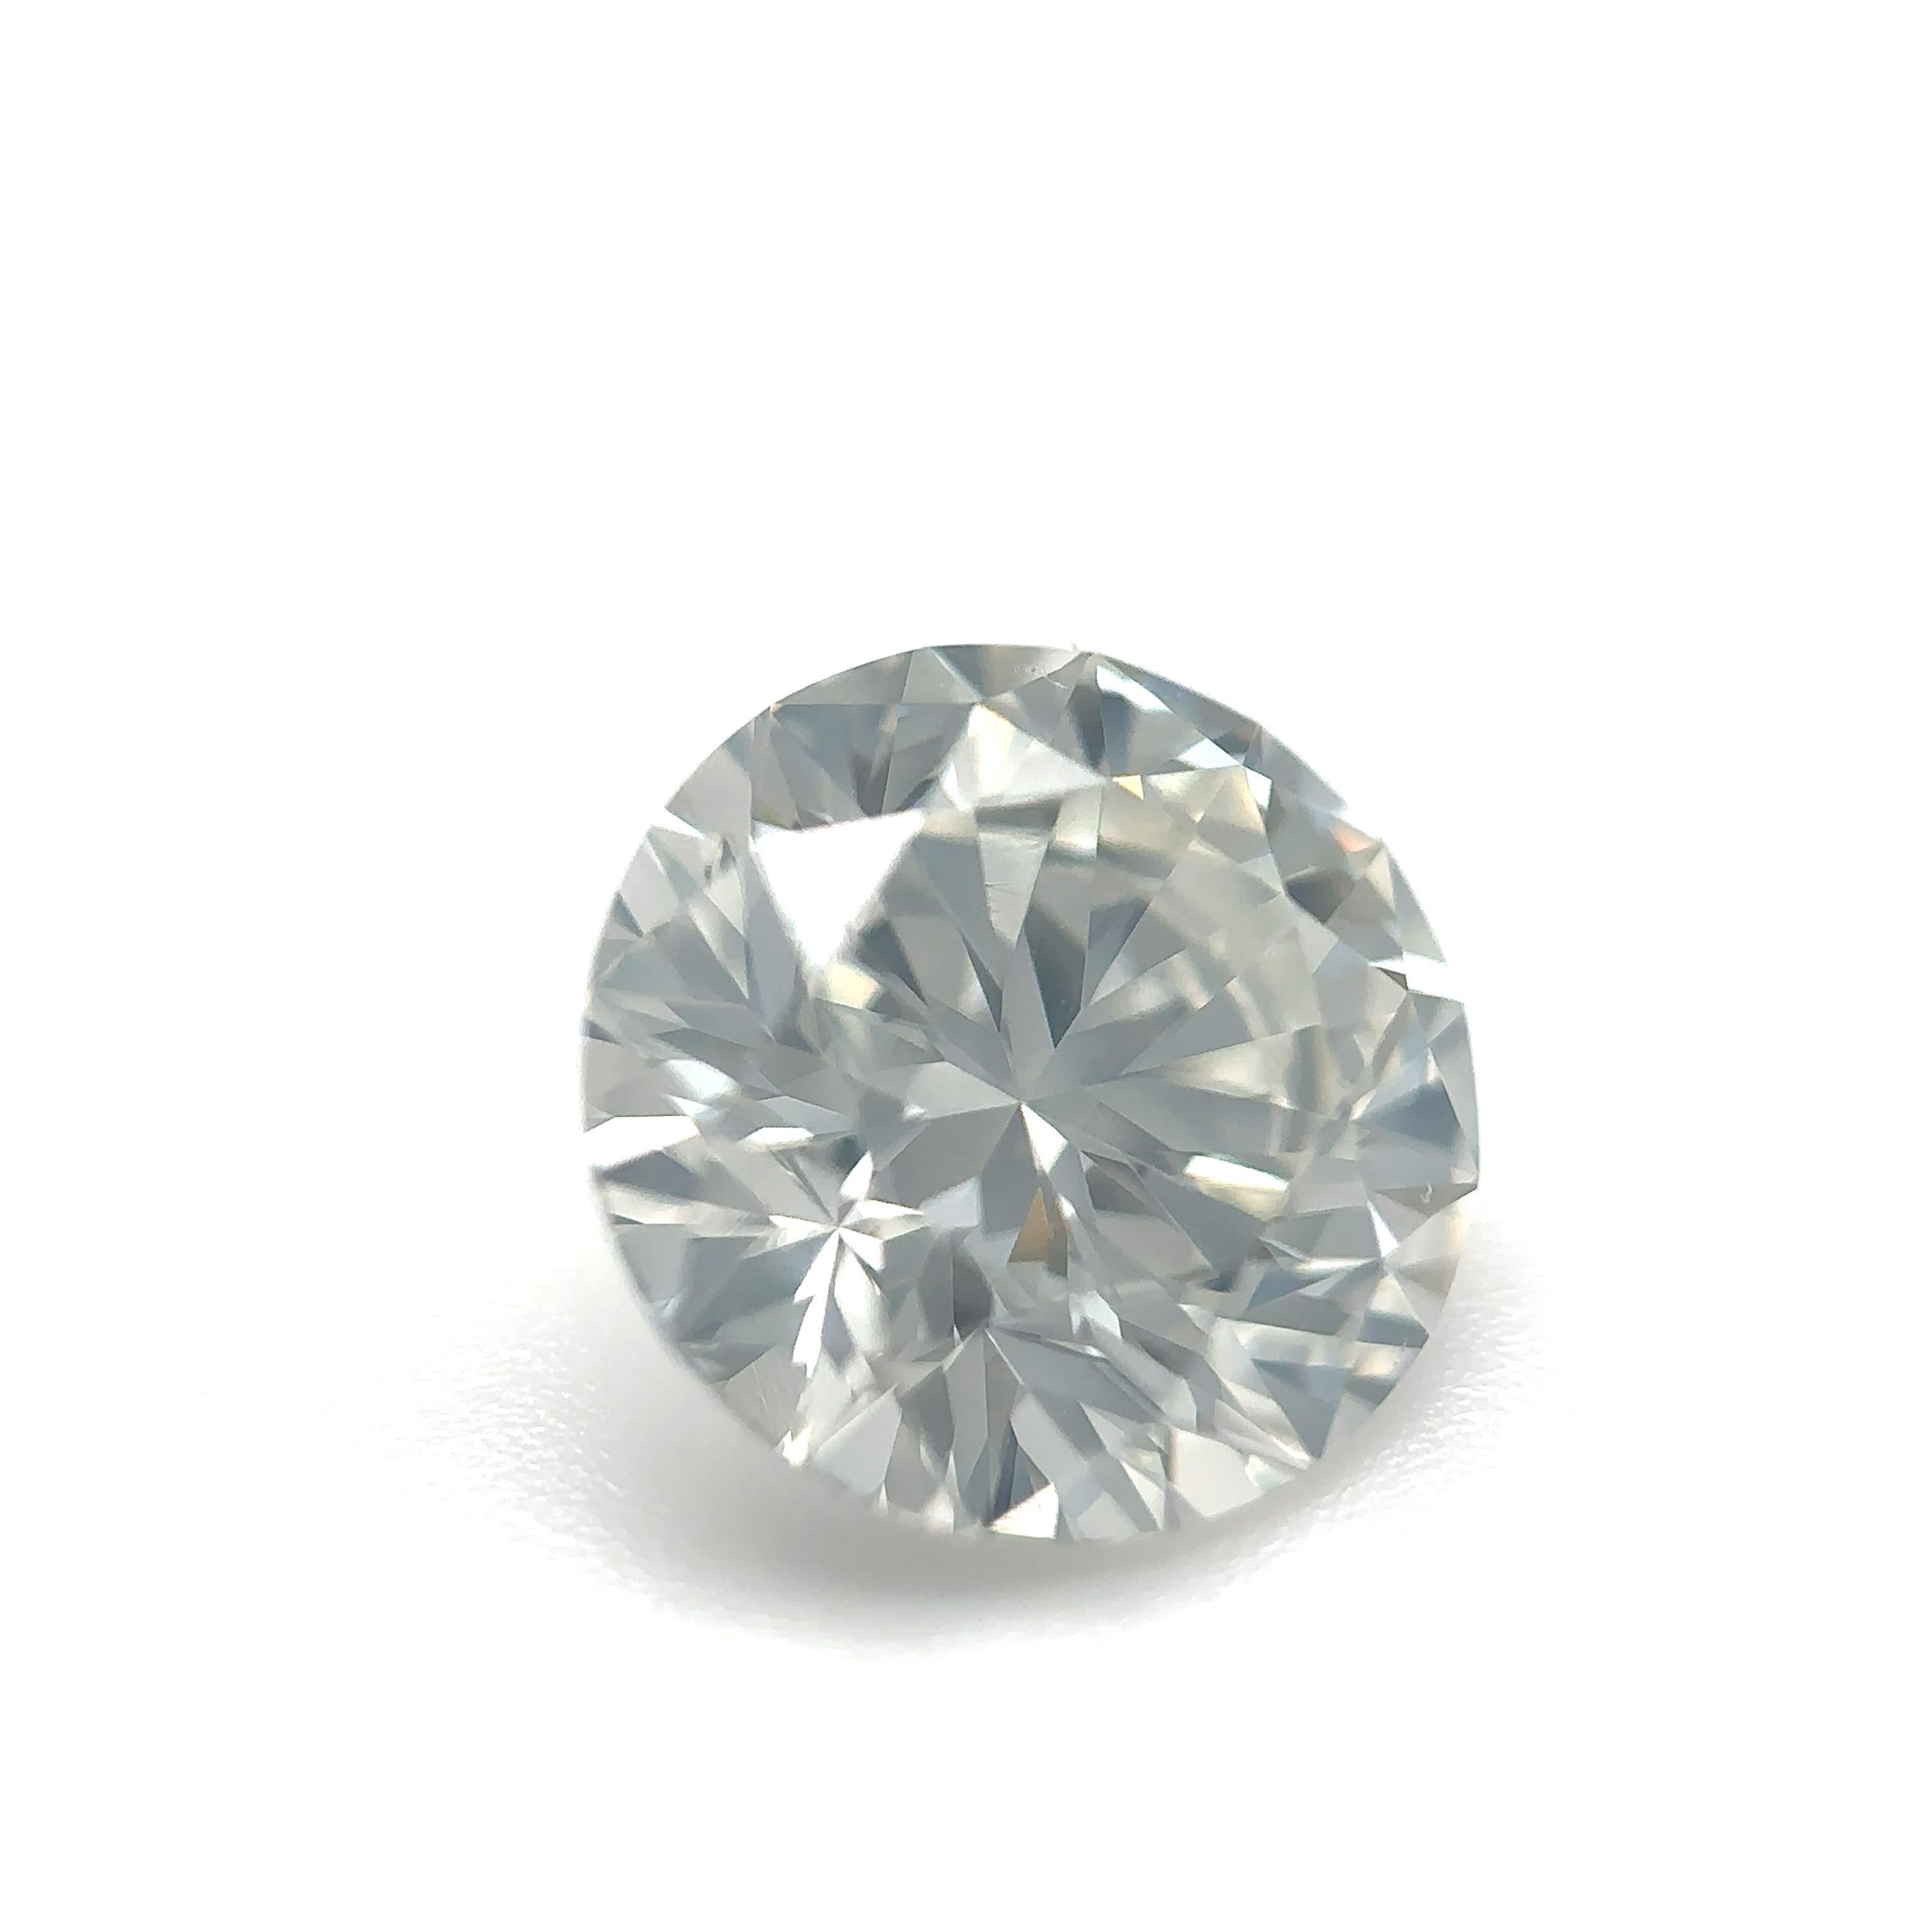 GIA-zertifizierter 1,57 Karat runder Brillant-Naturdiamant Lose Stein (Anpassungsoption)

Farbe: H
Klarheit: SI1

Ideal für Verlobungsringe, Eheringe, Diamant-Halsketten und Diamant-Ohrringe. Setzen Sie sich mit uns in Verbindung, um Ihren Schmuck